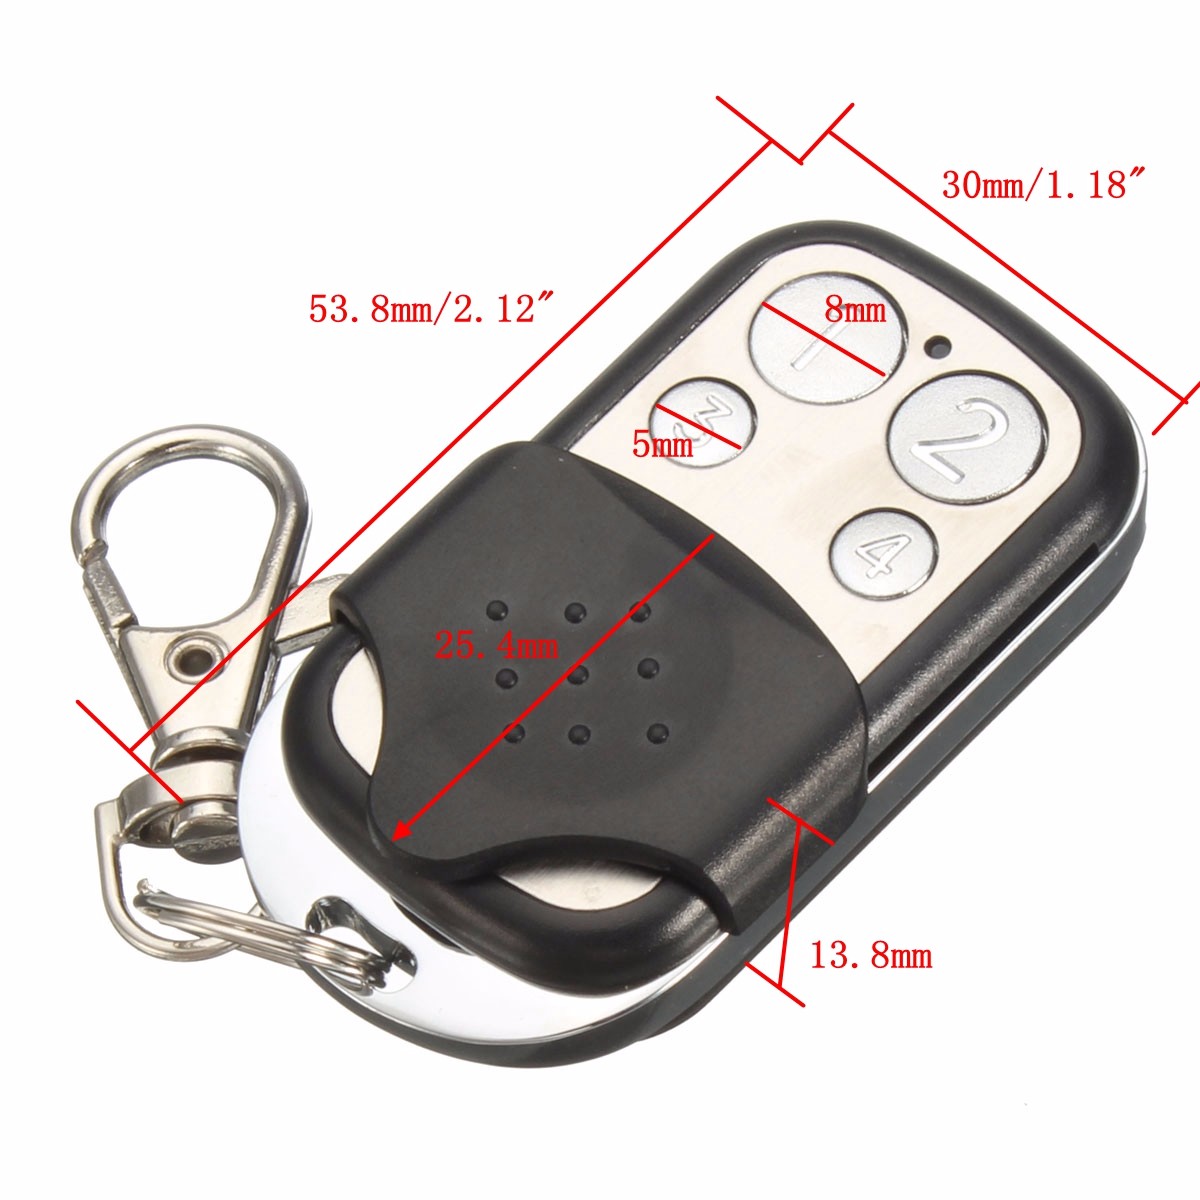 4-Button-433MHz-Garage-Gate-Key-Remote-Control-For-Marantec-D302D304D313-Comfort-220-1060990-10